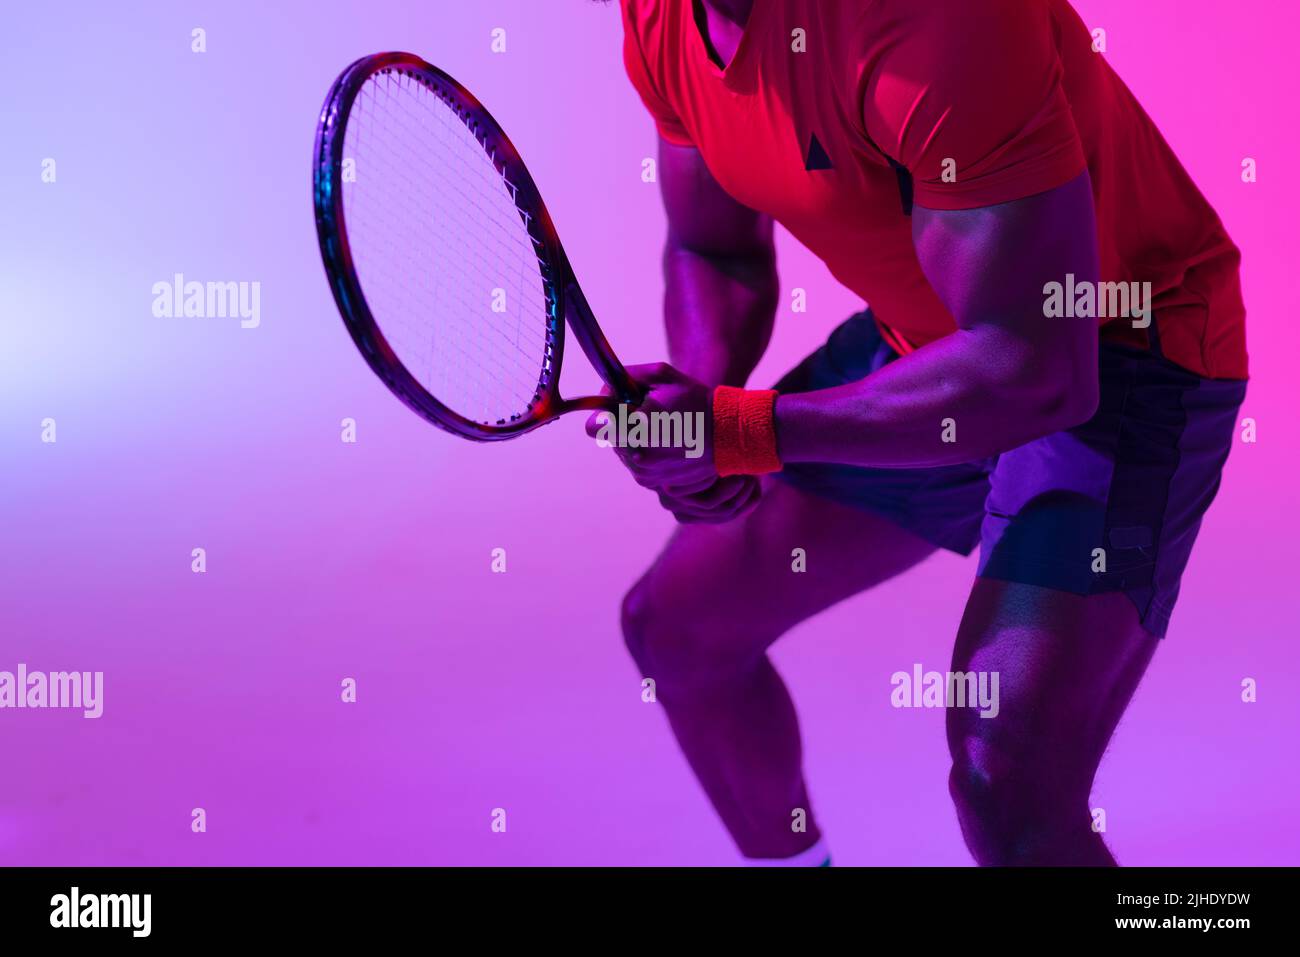 Image de la section médiane d'un joueur de tennis afro-américain dans un éclairage violet fluo Banque D'Images